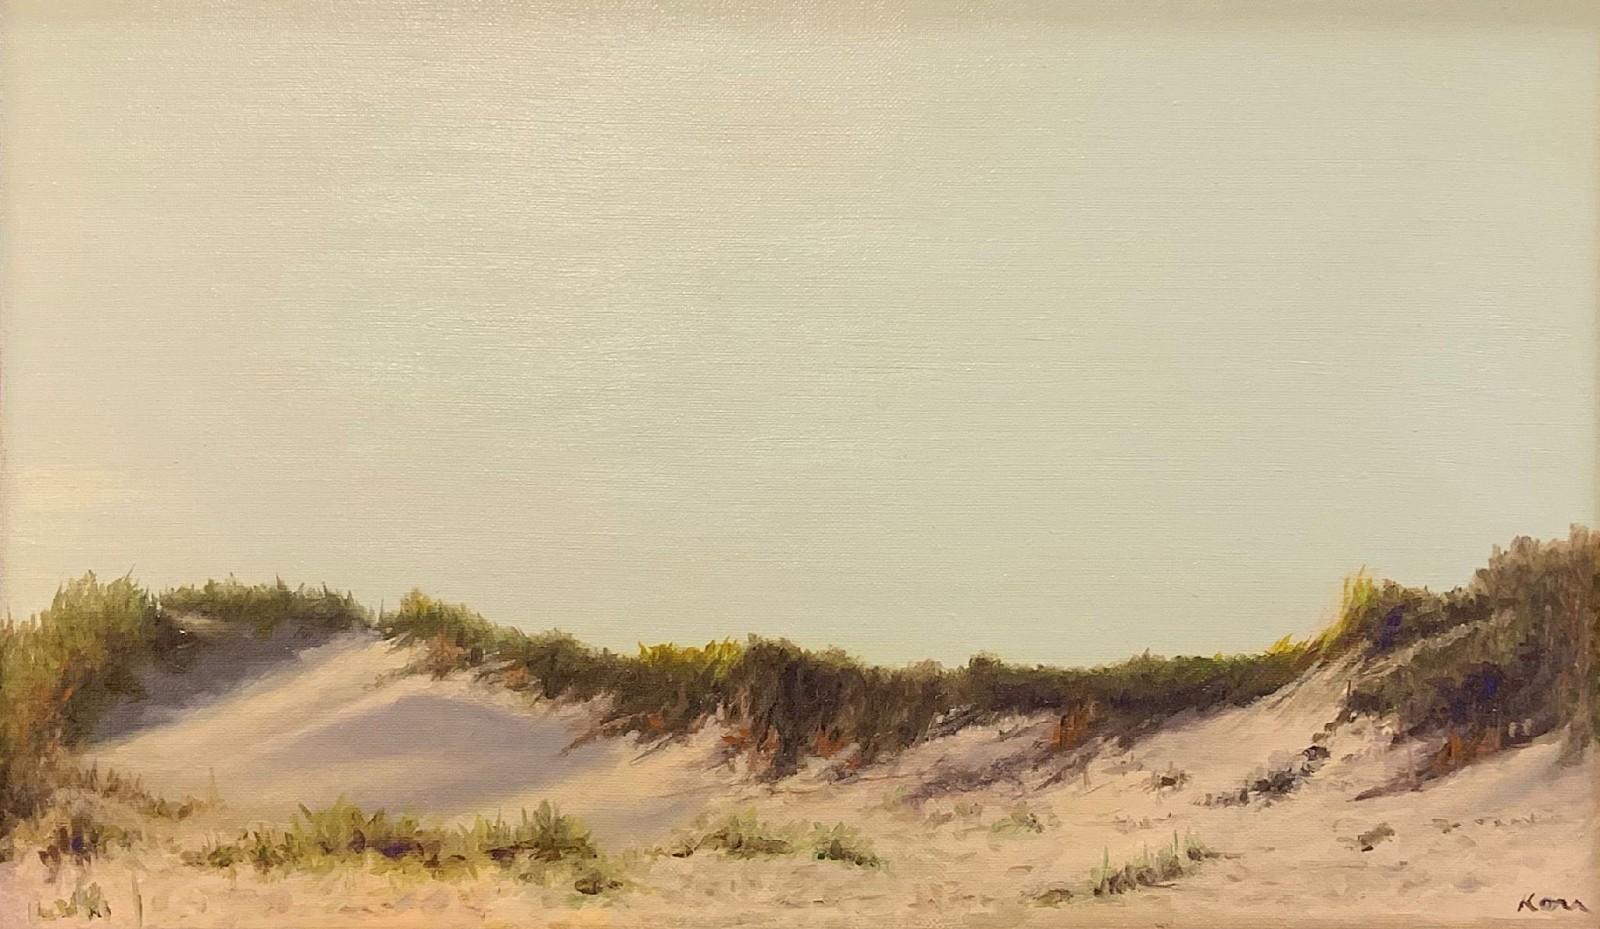 Marla Korr, Dune in the Morning Light, 2023
oil on linen, 12 x 20 in. (30.5 x 50.8 cm)
MK230801